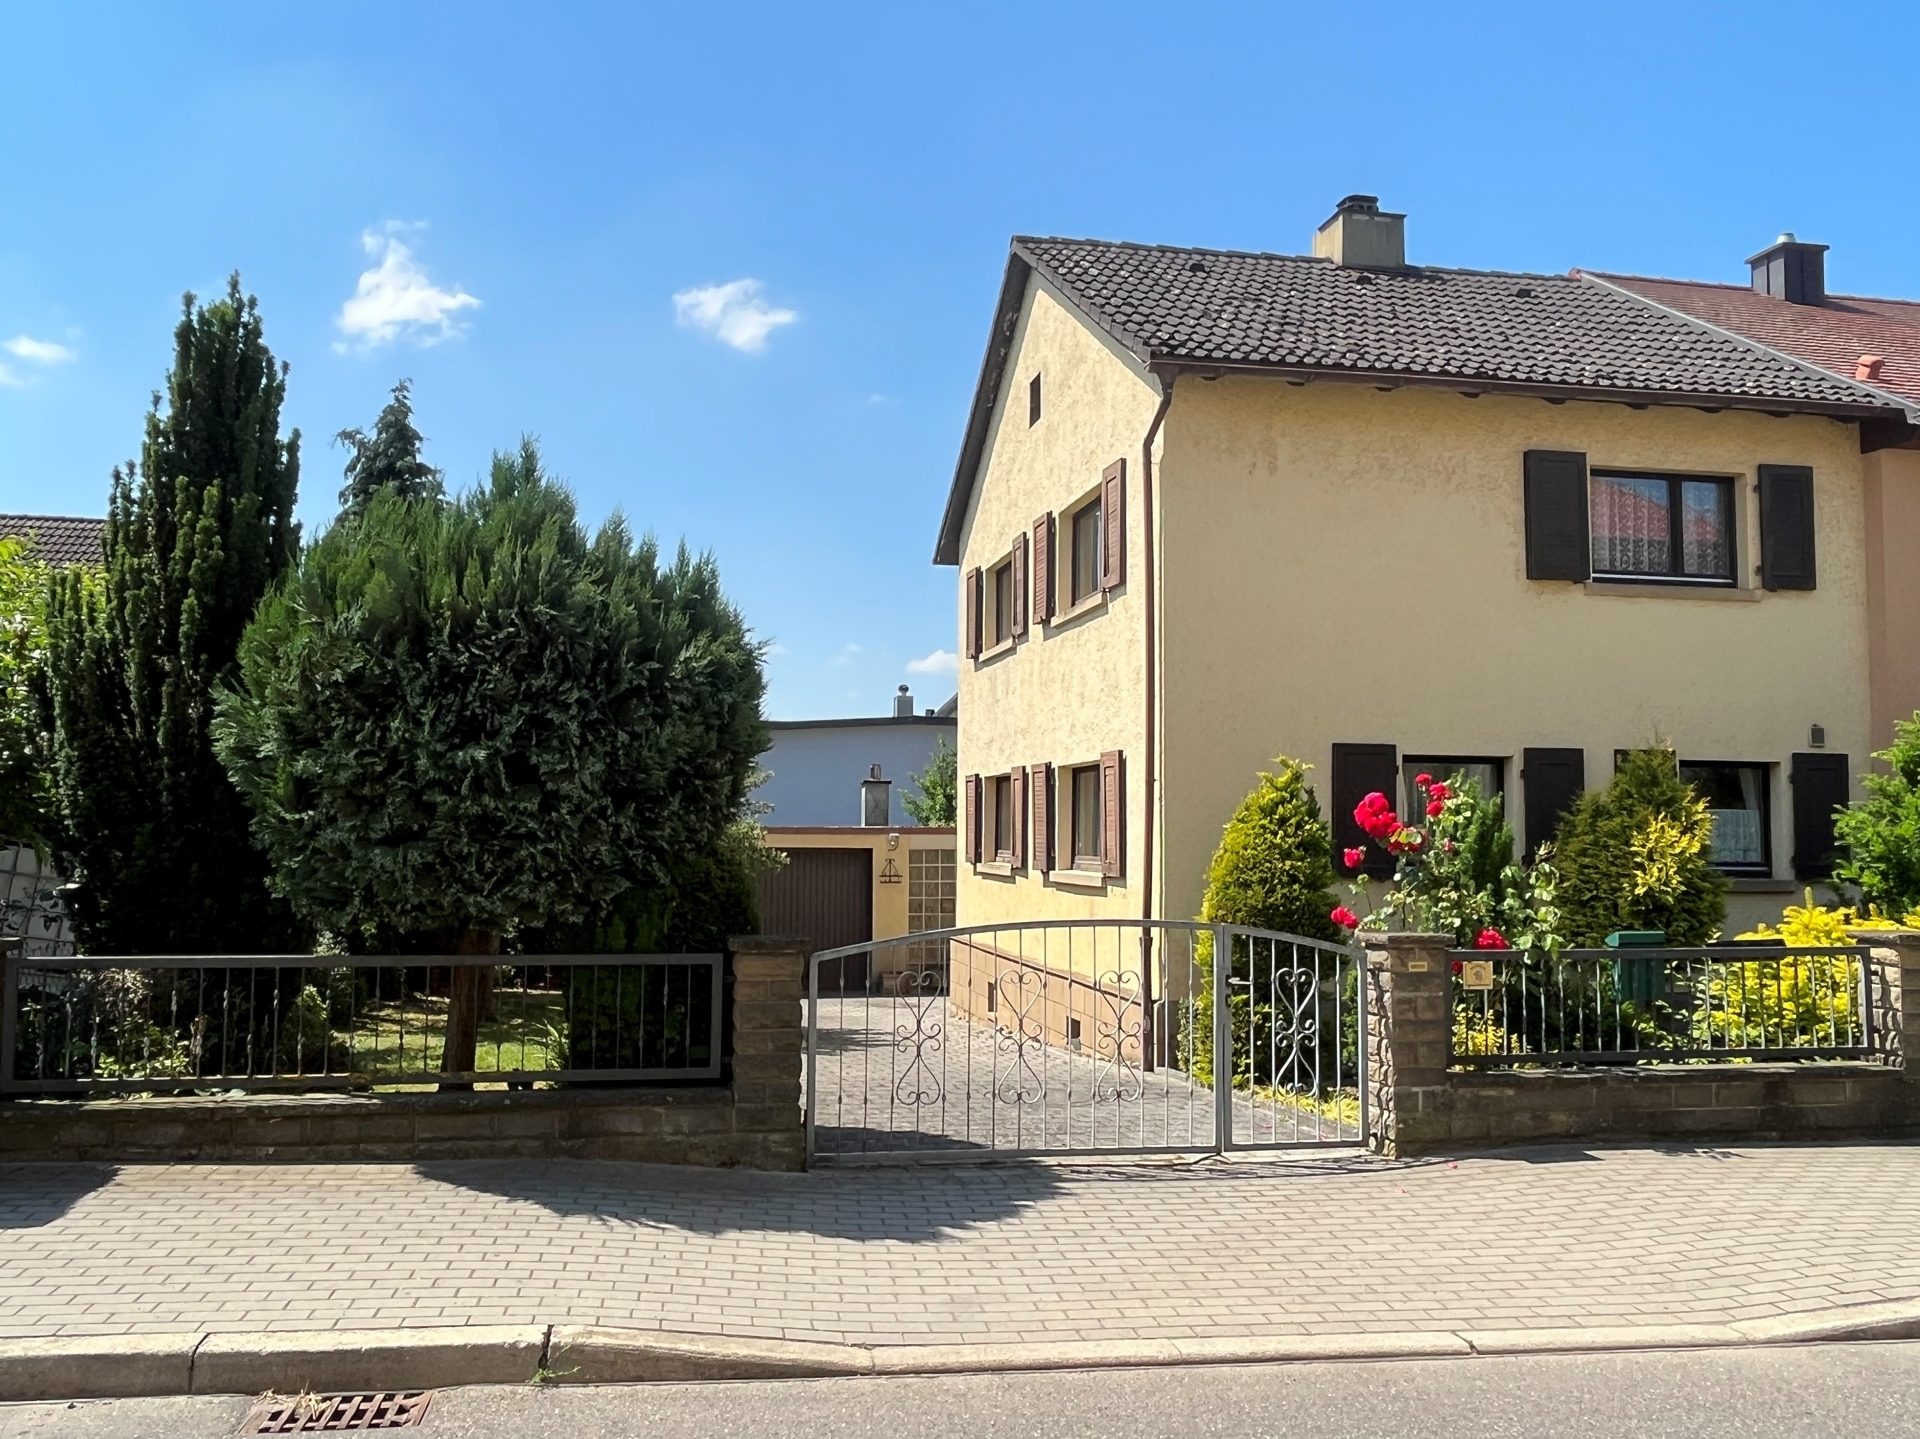 HUST Immobilien GmbH & Co. KG - Immobilienangebot - Sulzfeld - Alle - Sofort verfügbar! Einfamilienhaus mit Garage und sonnigem Garten in Sulzfeld